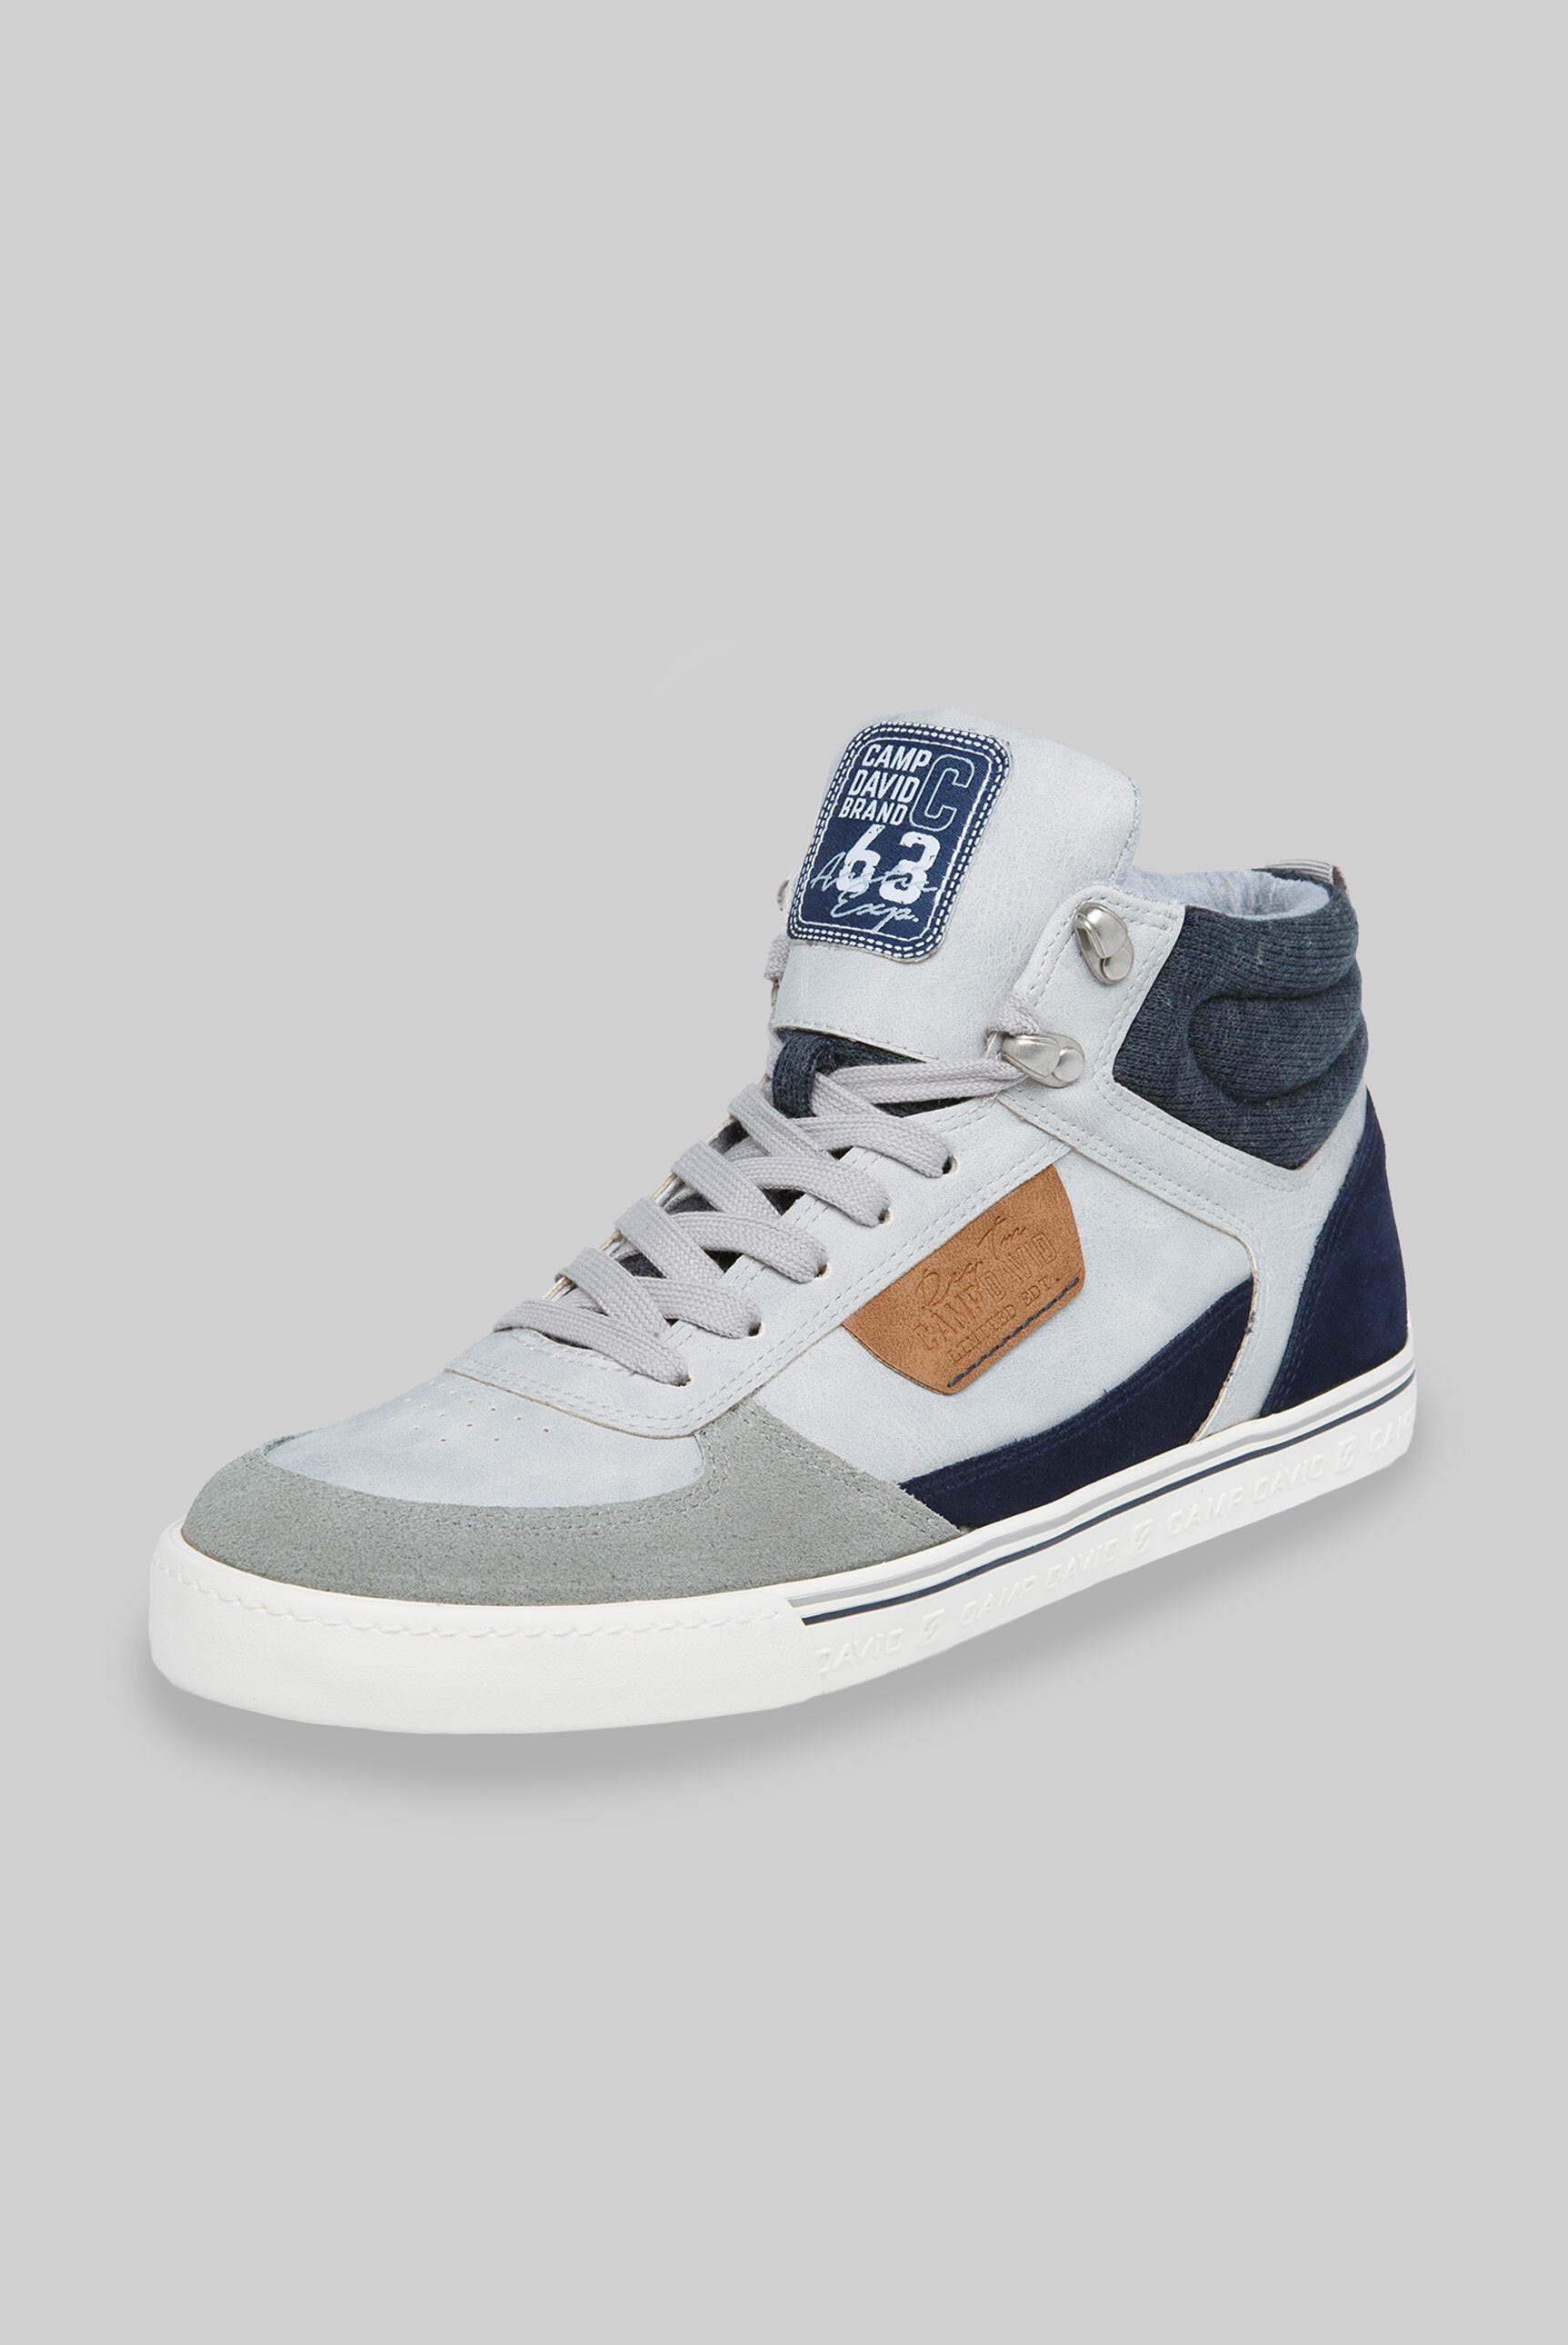 CAMP DAVID Sneaker mit innenliegenden Reißverschluss online kaufen | OTTO